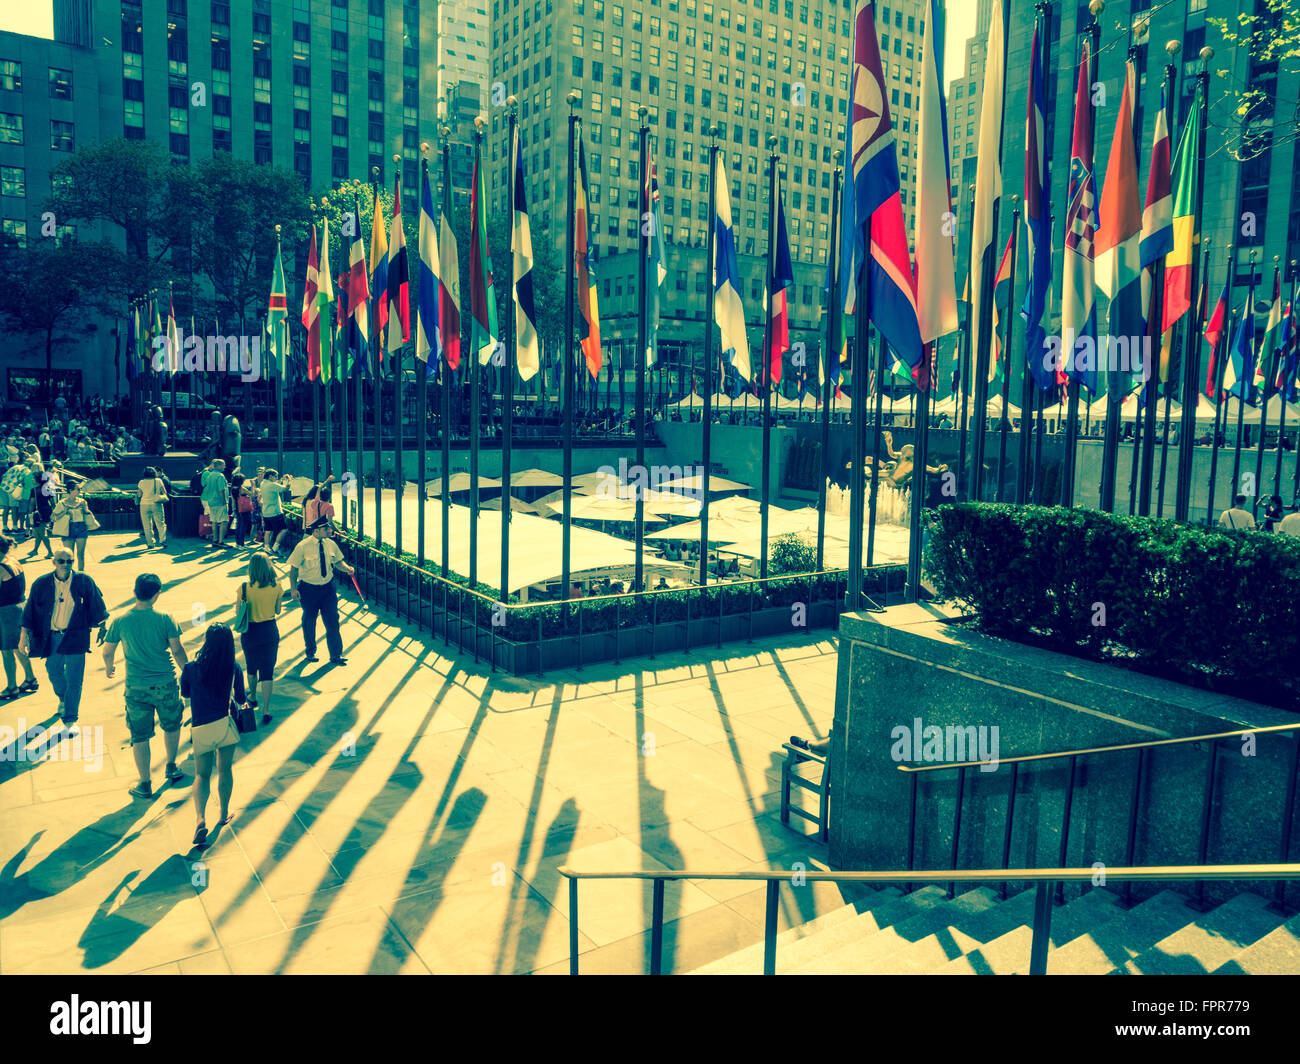 La Rockefeller Plaza - Le Grand Hall - partie du Rockefeller Center, New York City, USA. Banque D'Images